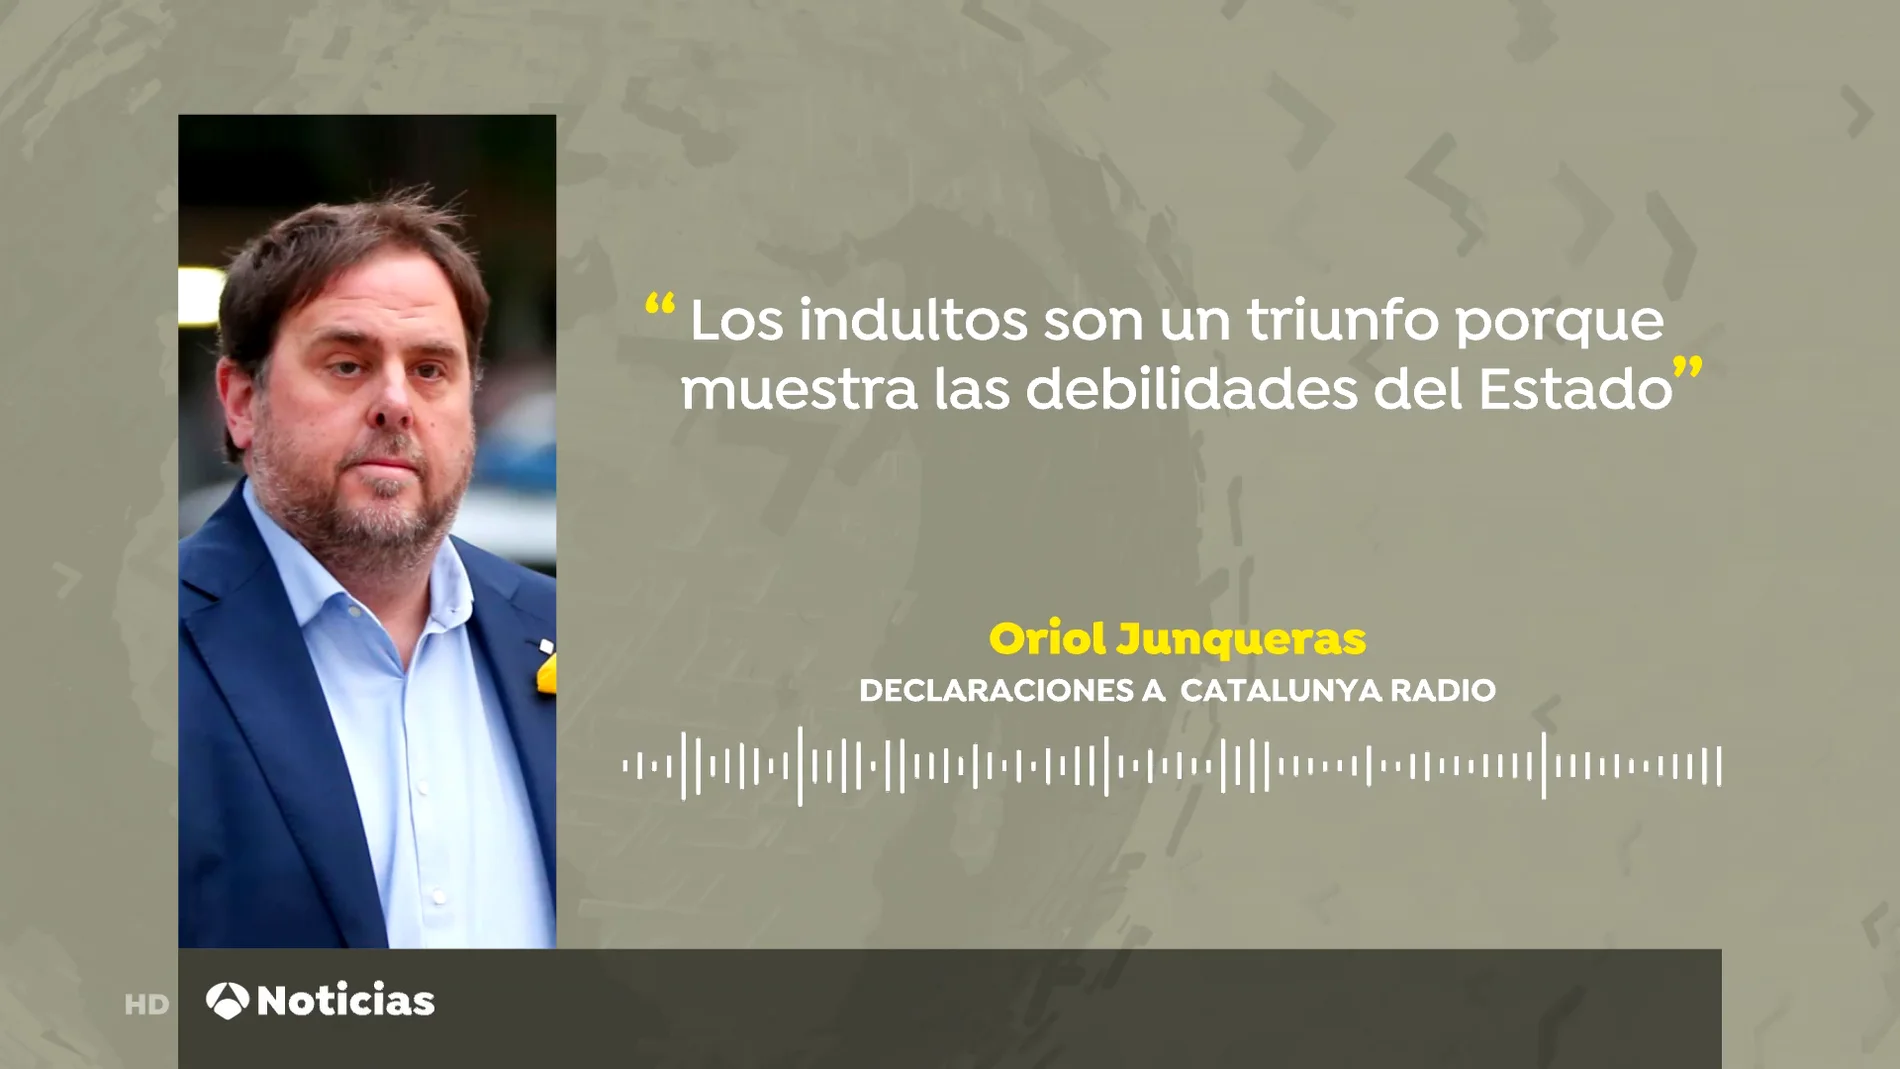 Oriol Junqueras opina que el indulto demuestra algunas "debilidades de los aparatos del Estado"